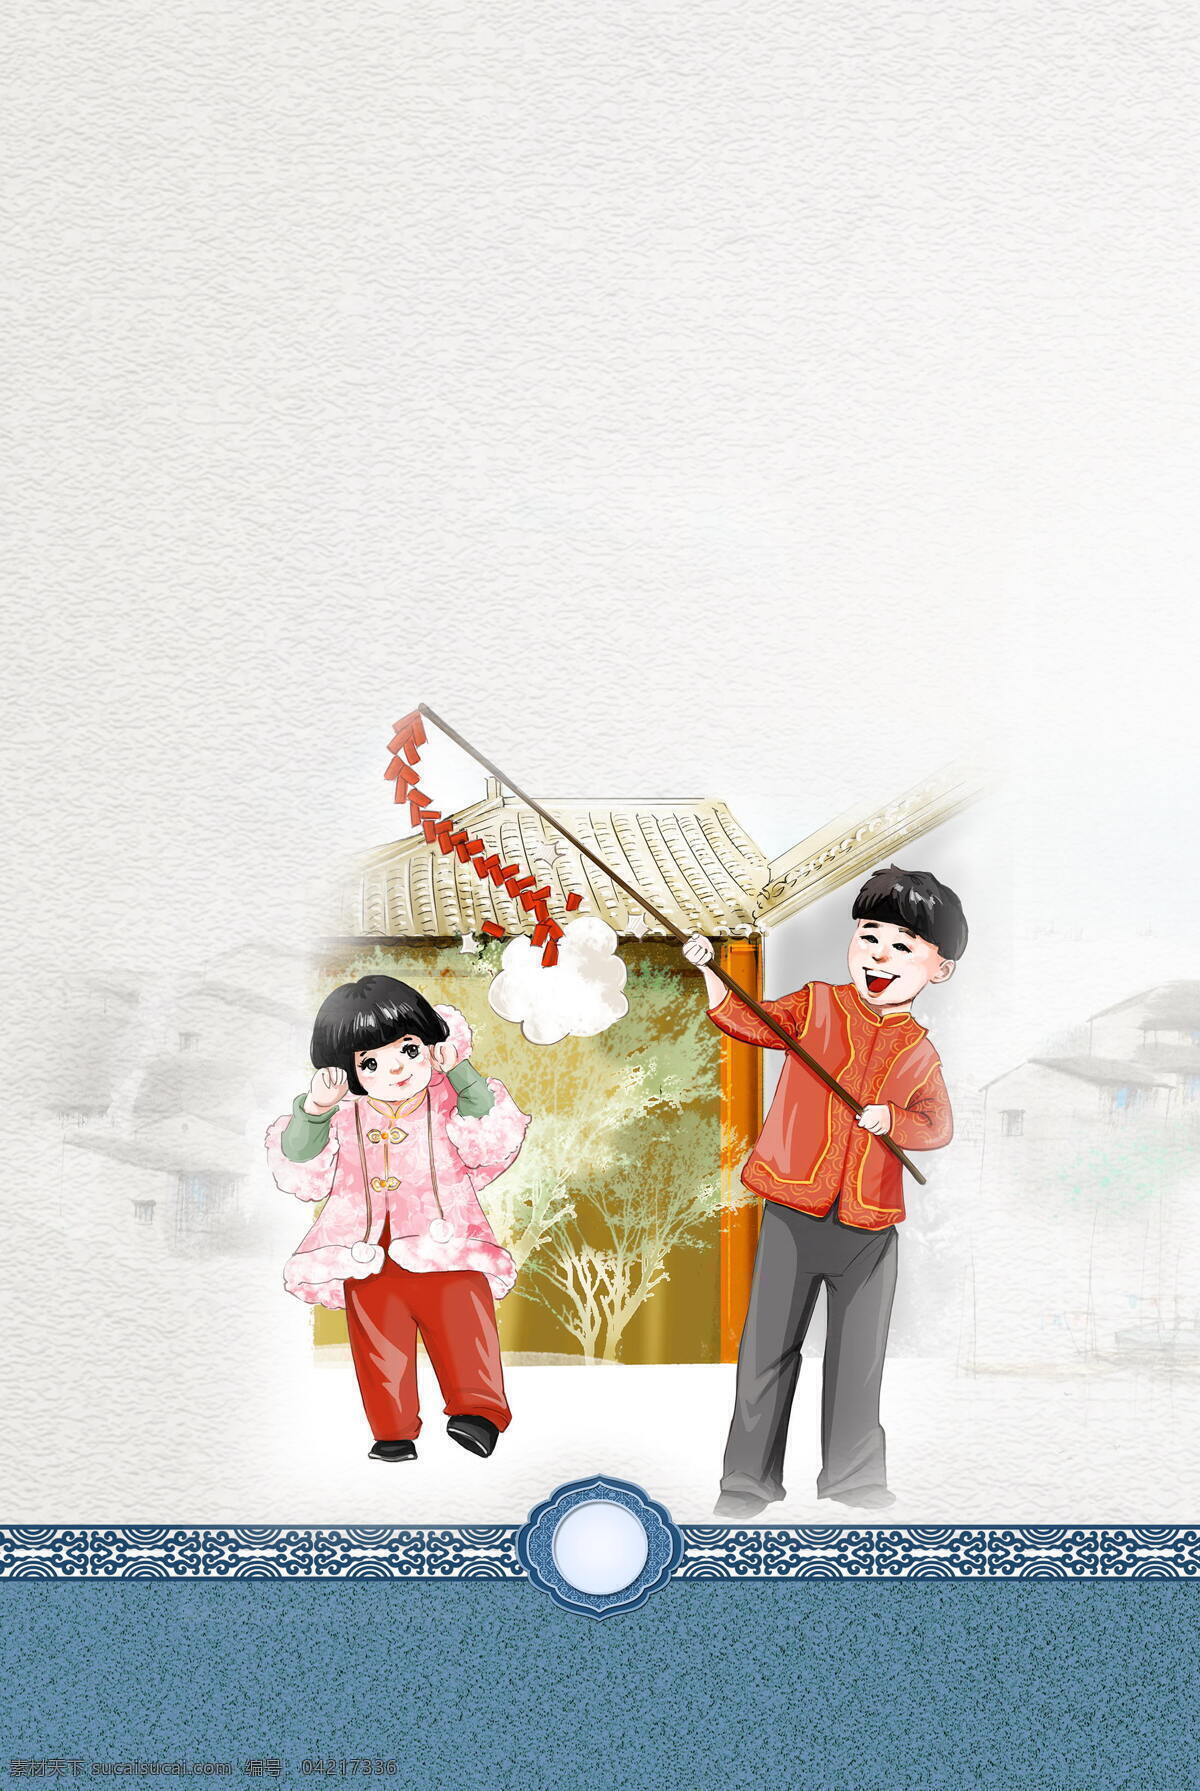 喜庆 春节 鞭炮 背景 中国风 水墨 边框 海报 广告